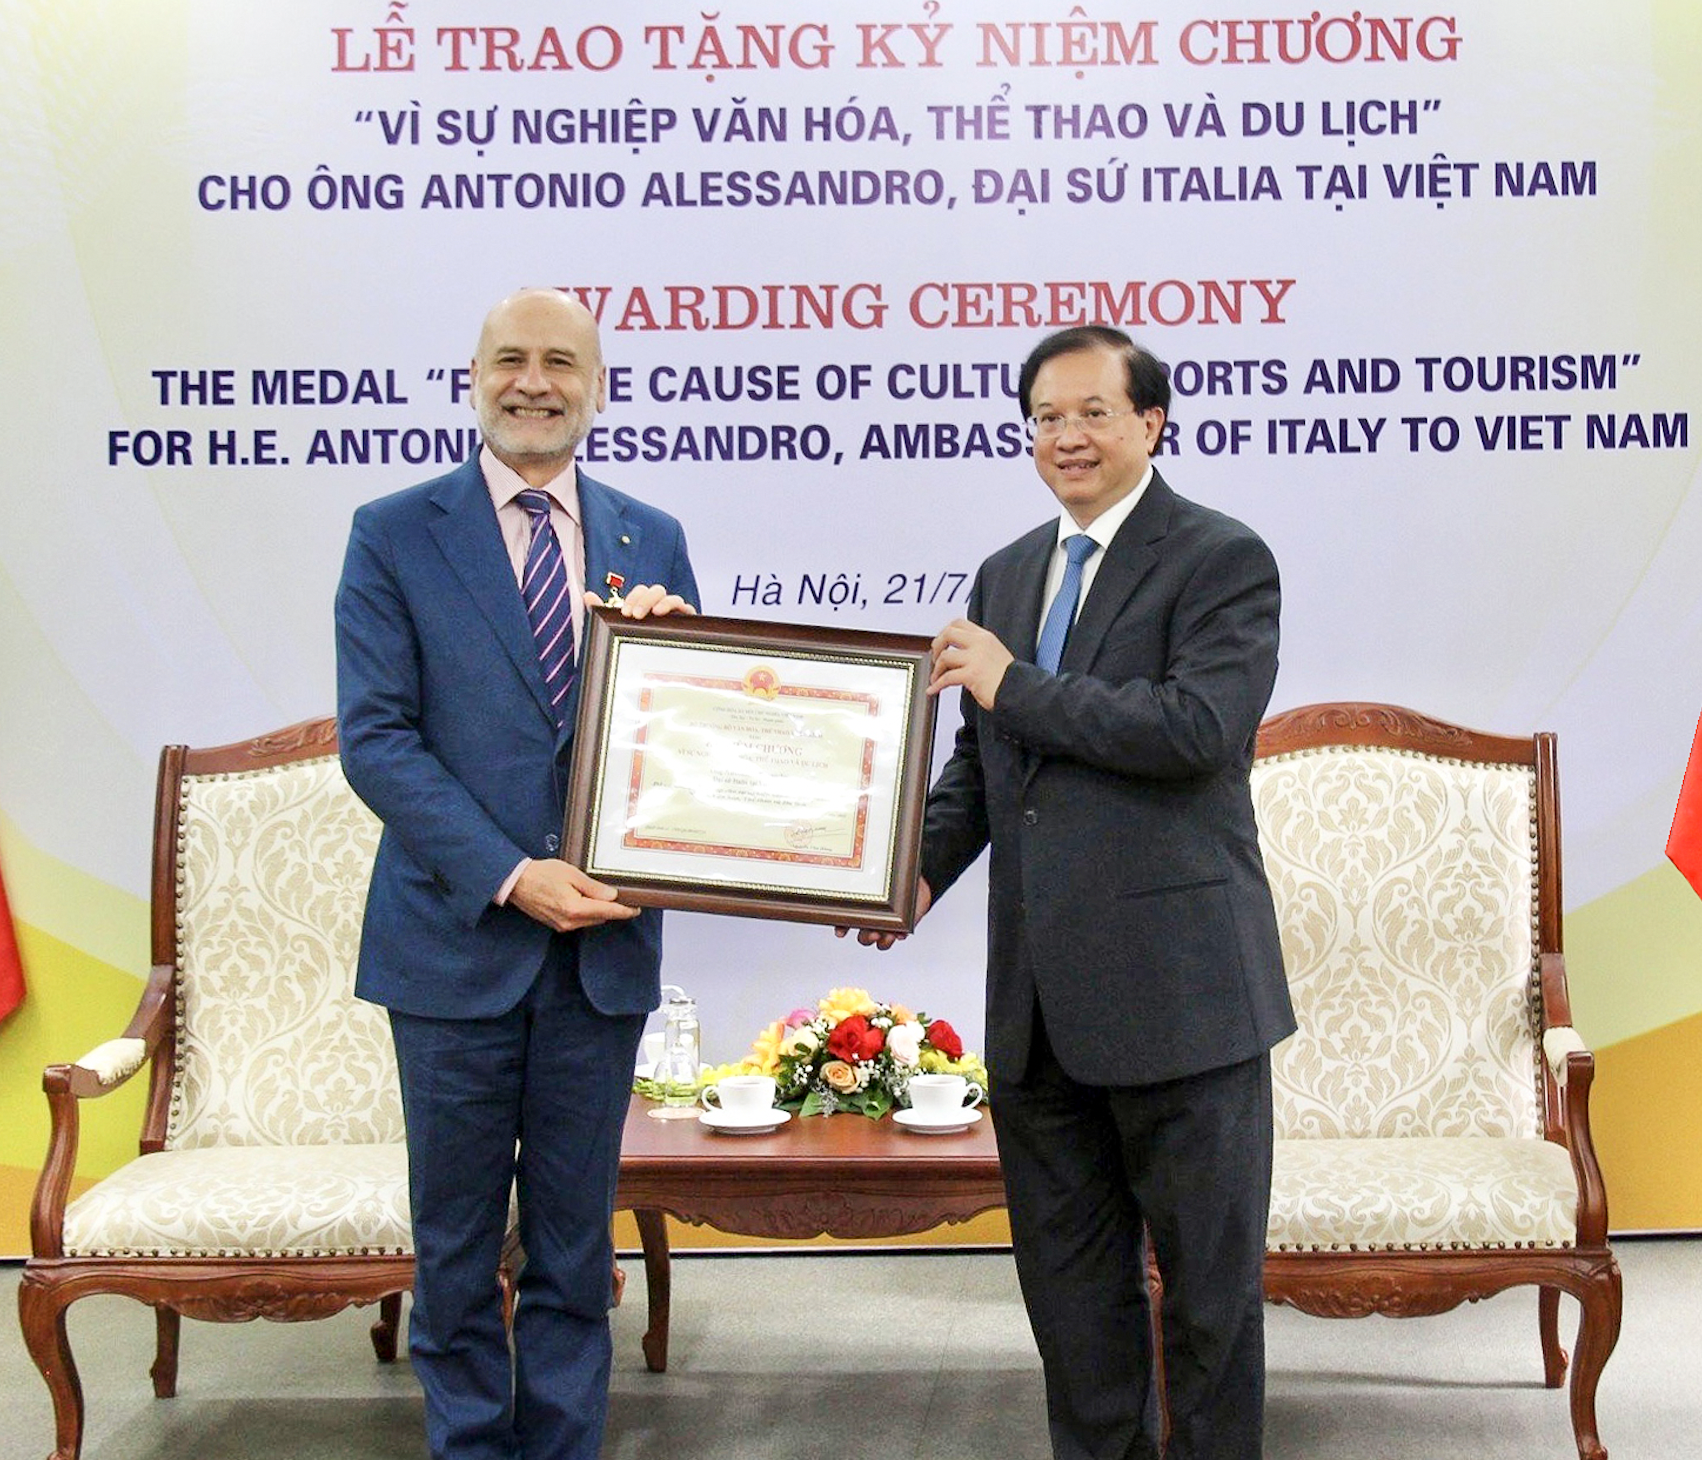 Bộ Văn hóa, Thể thao và Du lịch trao tặng Kỷ niệm chương “Vì sự nghiệp Văn hóa, Thể thao và Du lịch” ghi nhận đóng góp của Đại sứ Italia tại Việt Nam